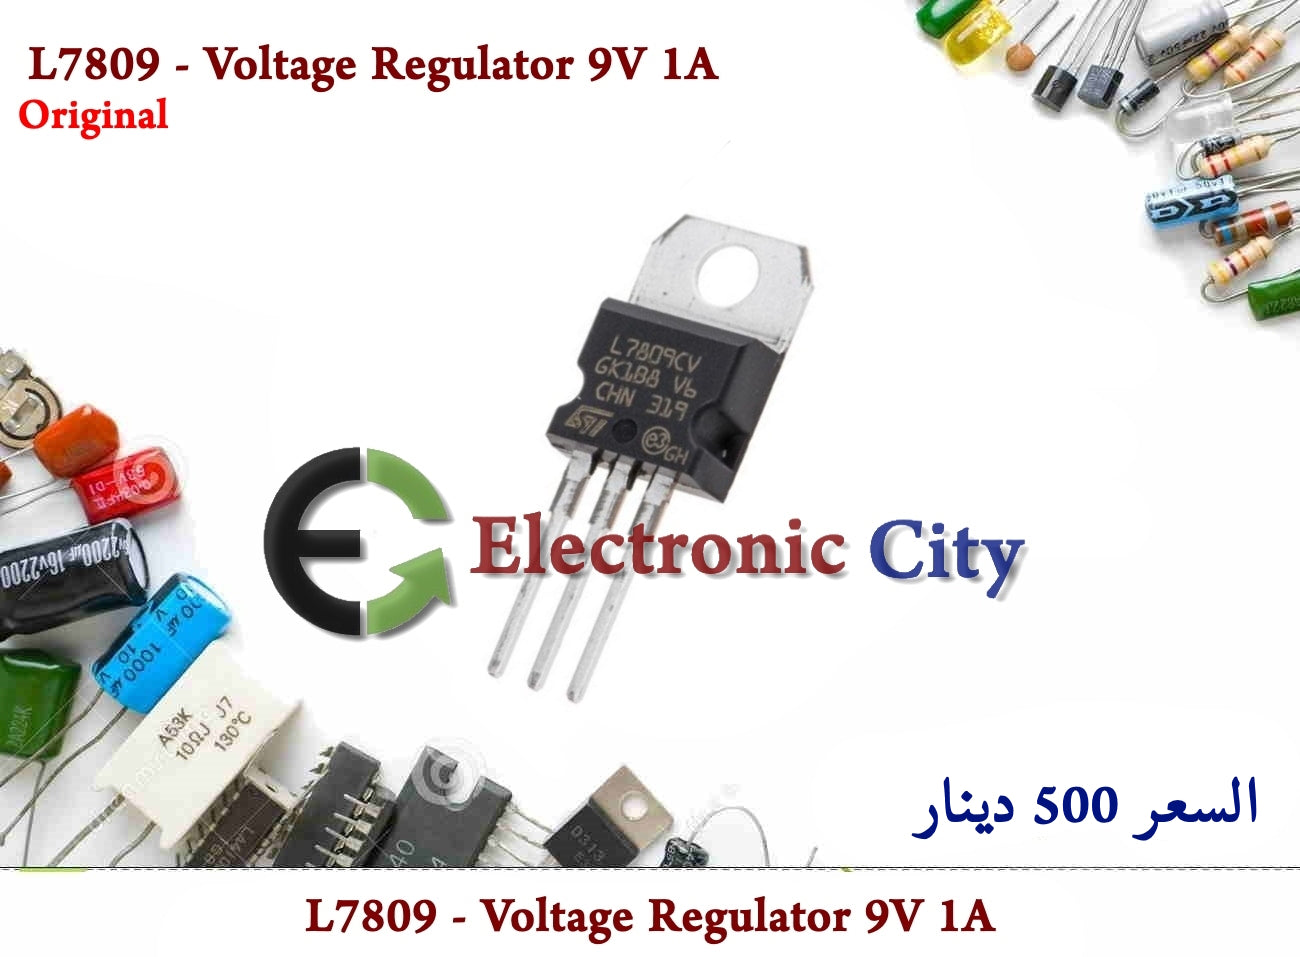 L7809 - Voltage Regulator 9V 1A